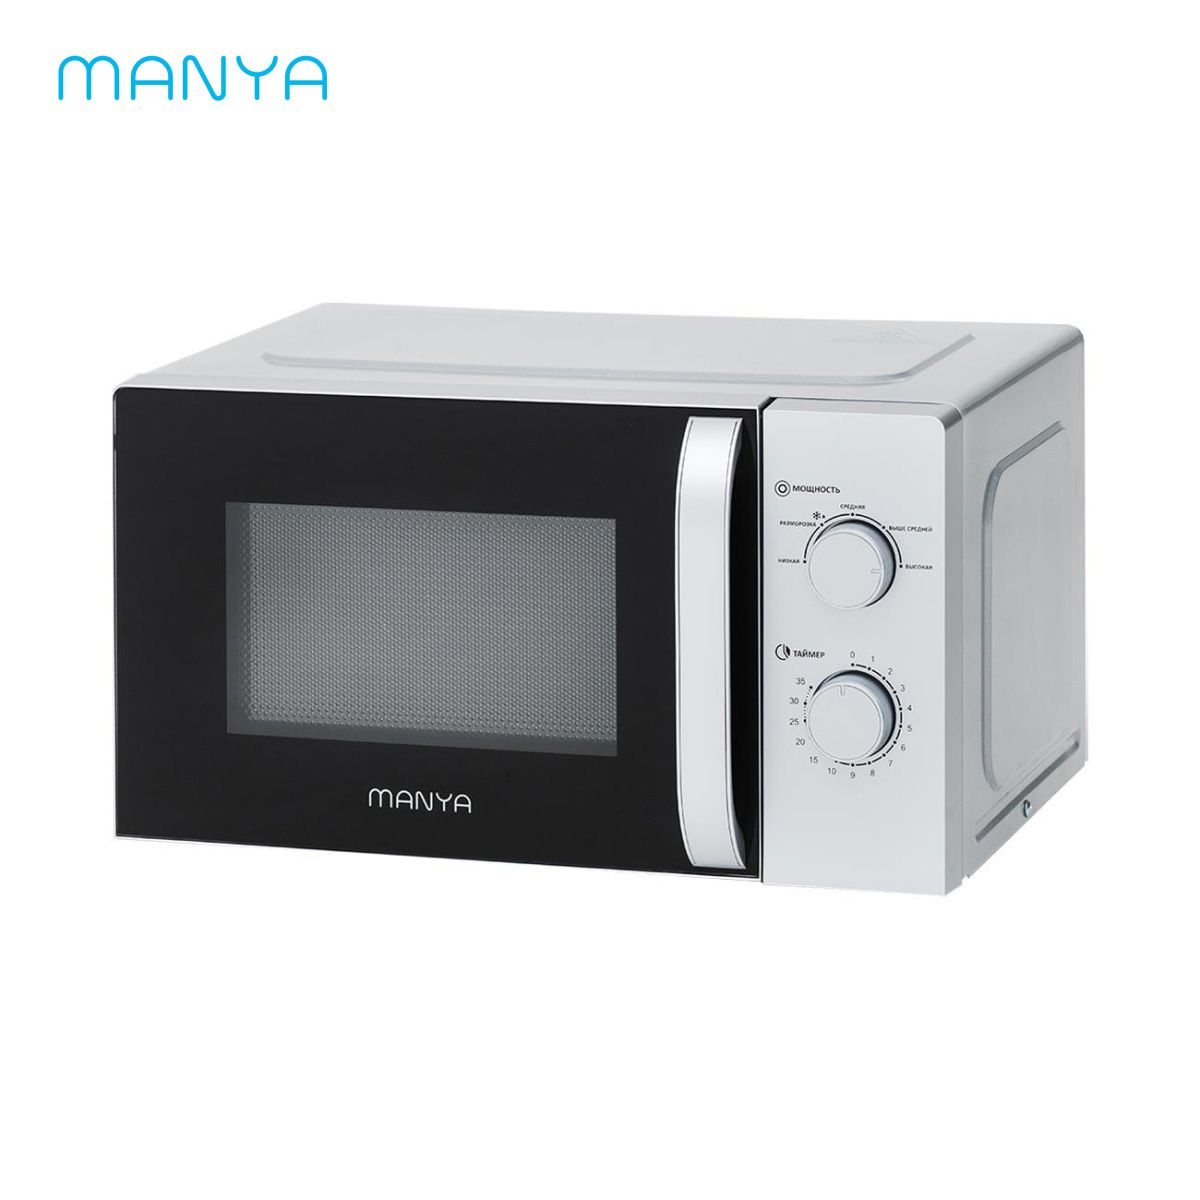 микроволновая печь соло manya w20m02b серебристый Микроволновая печь соло Manya W20M02B серебристый